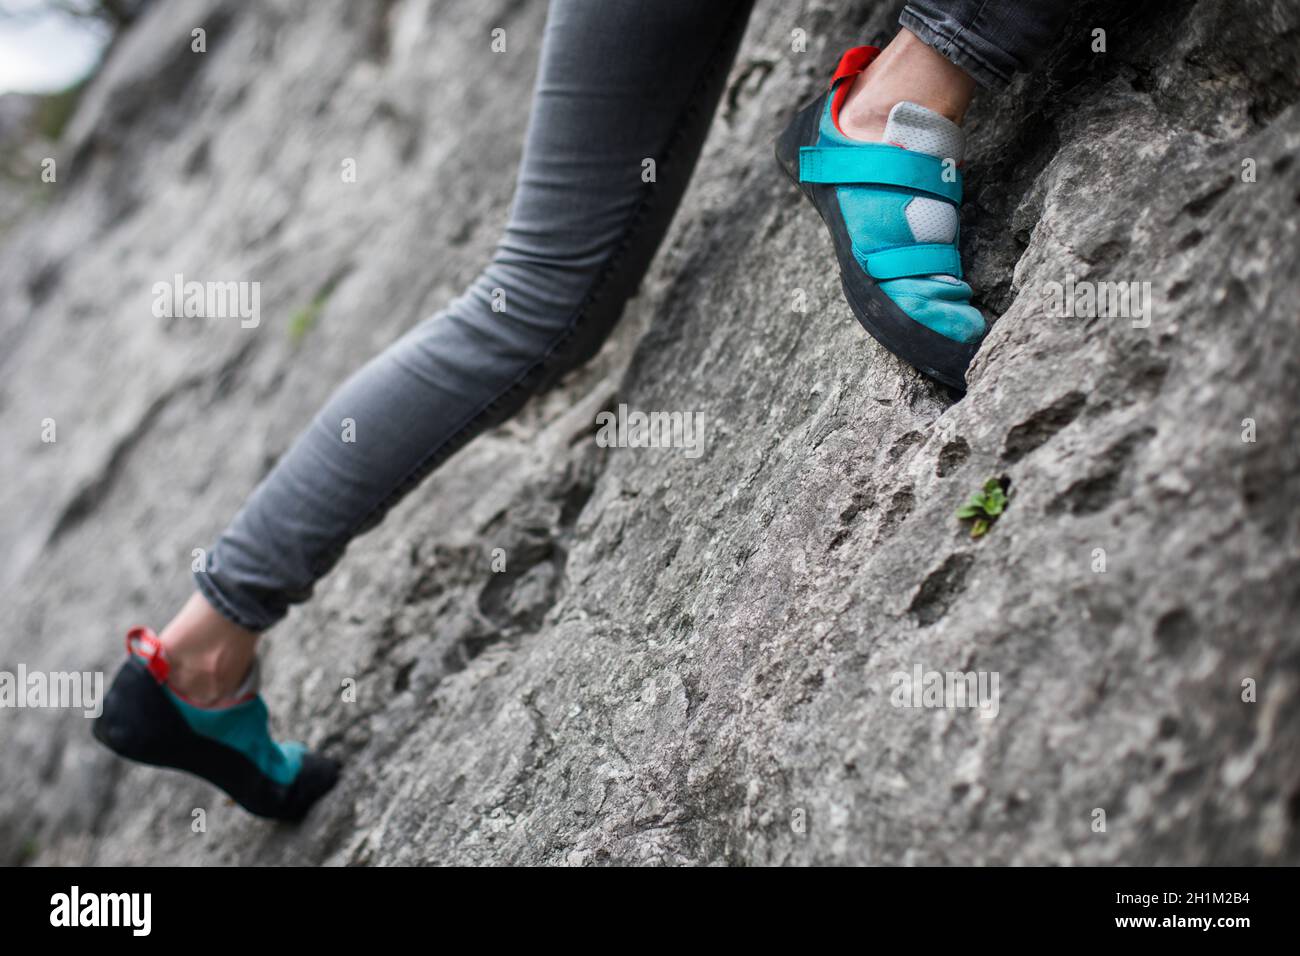 Primo piano o una persona che si arrampica indossando scarpe da arrampicata. Foto Stock